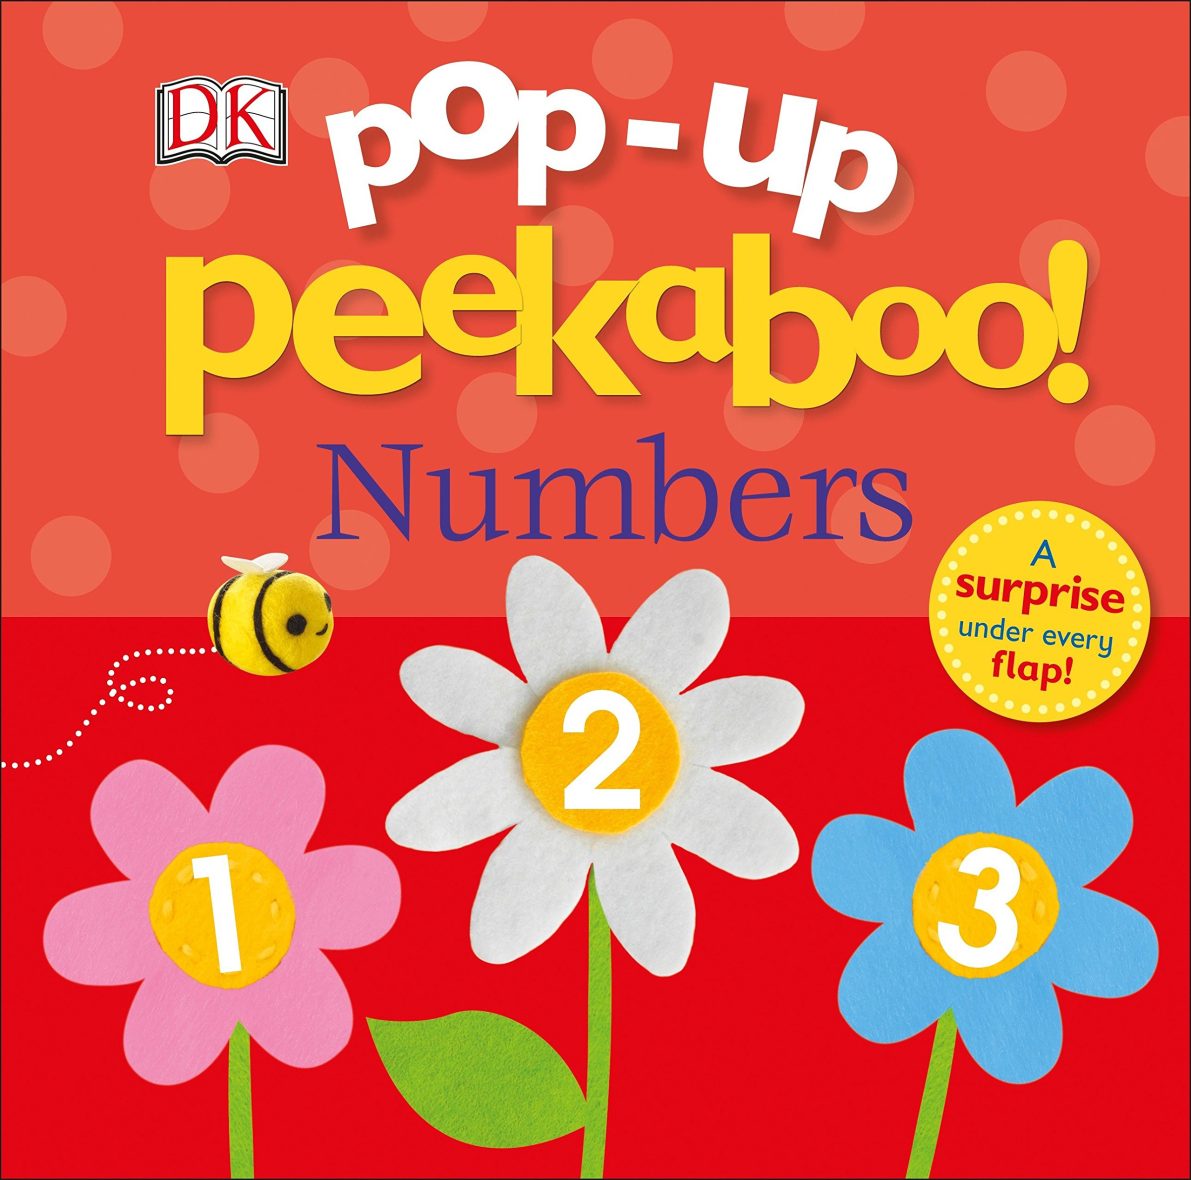 DK Pop up Peekaboo! Numbers